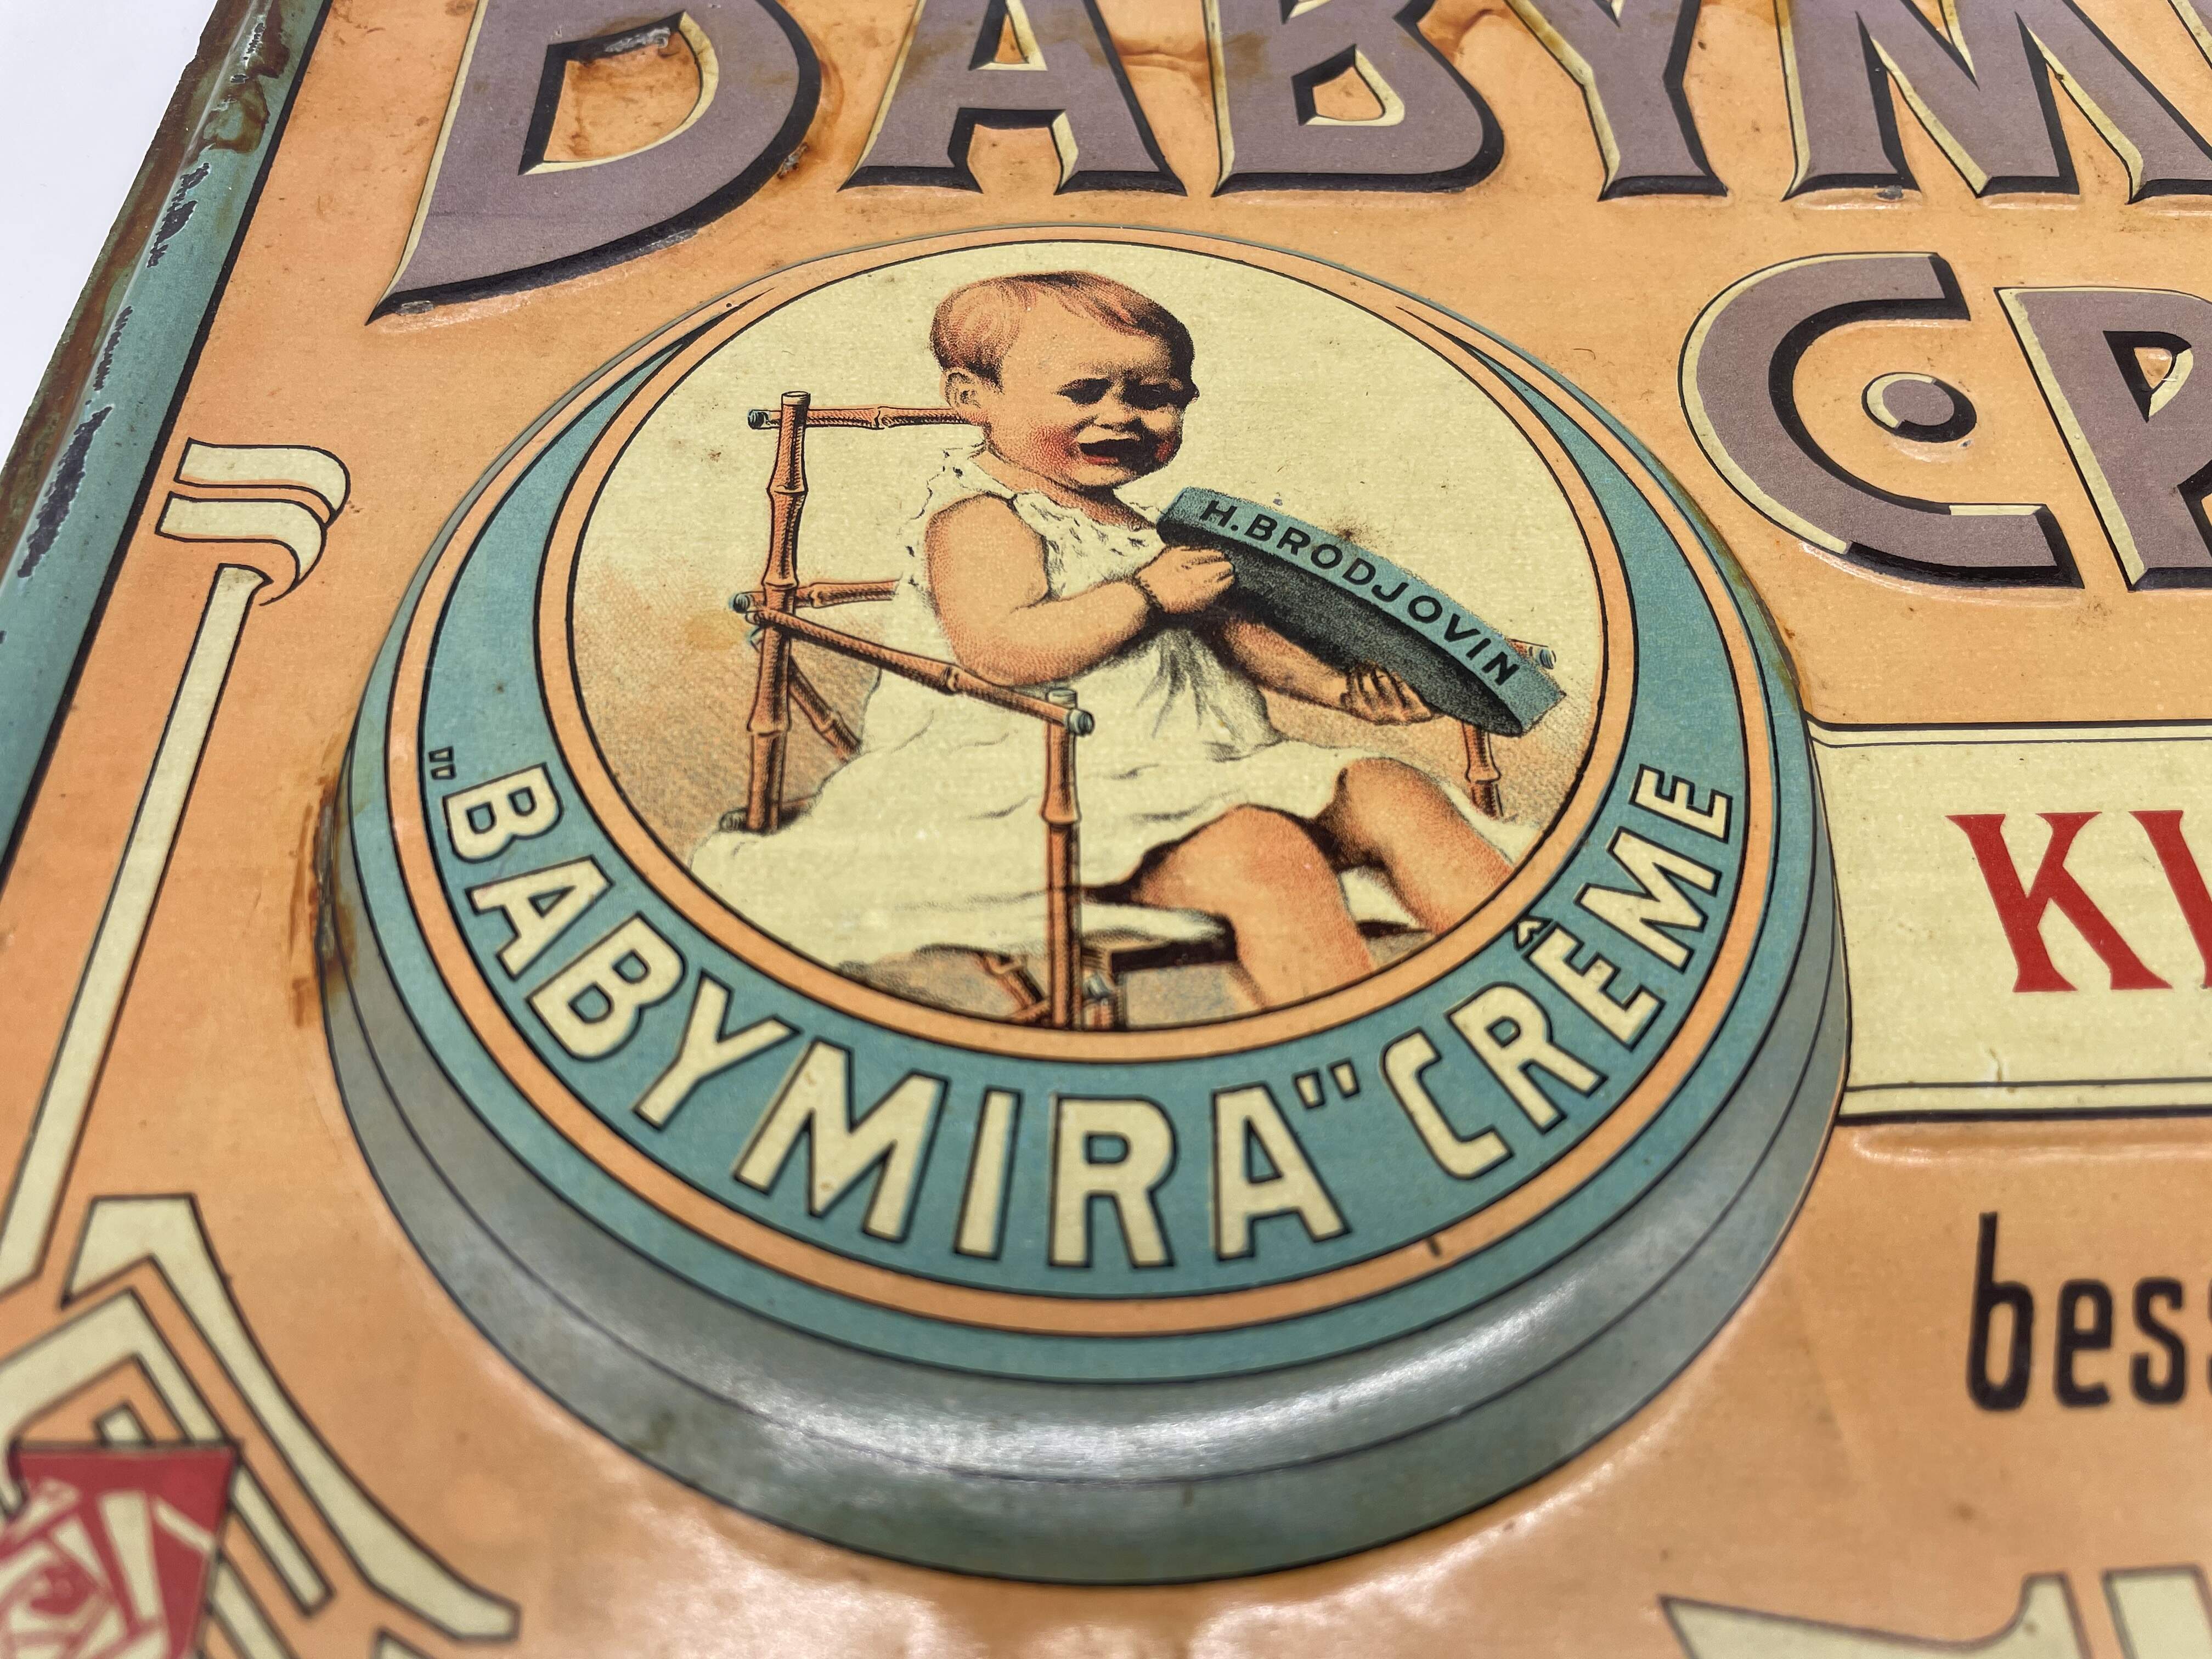 Blechschild Baby Mira Creme um 1900